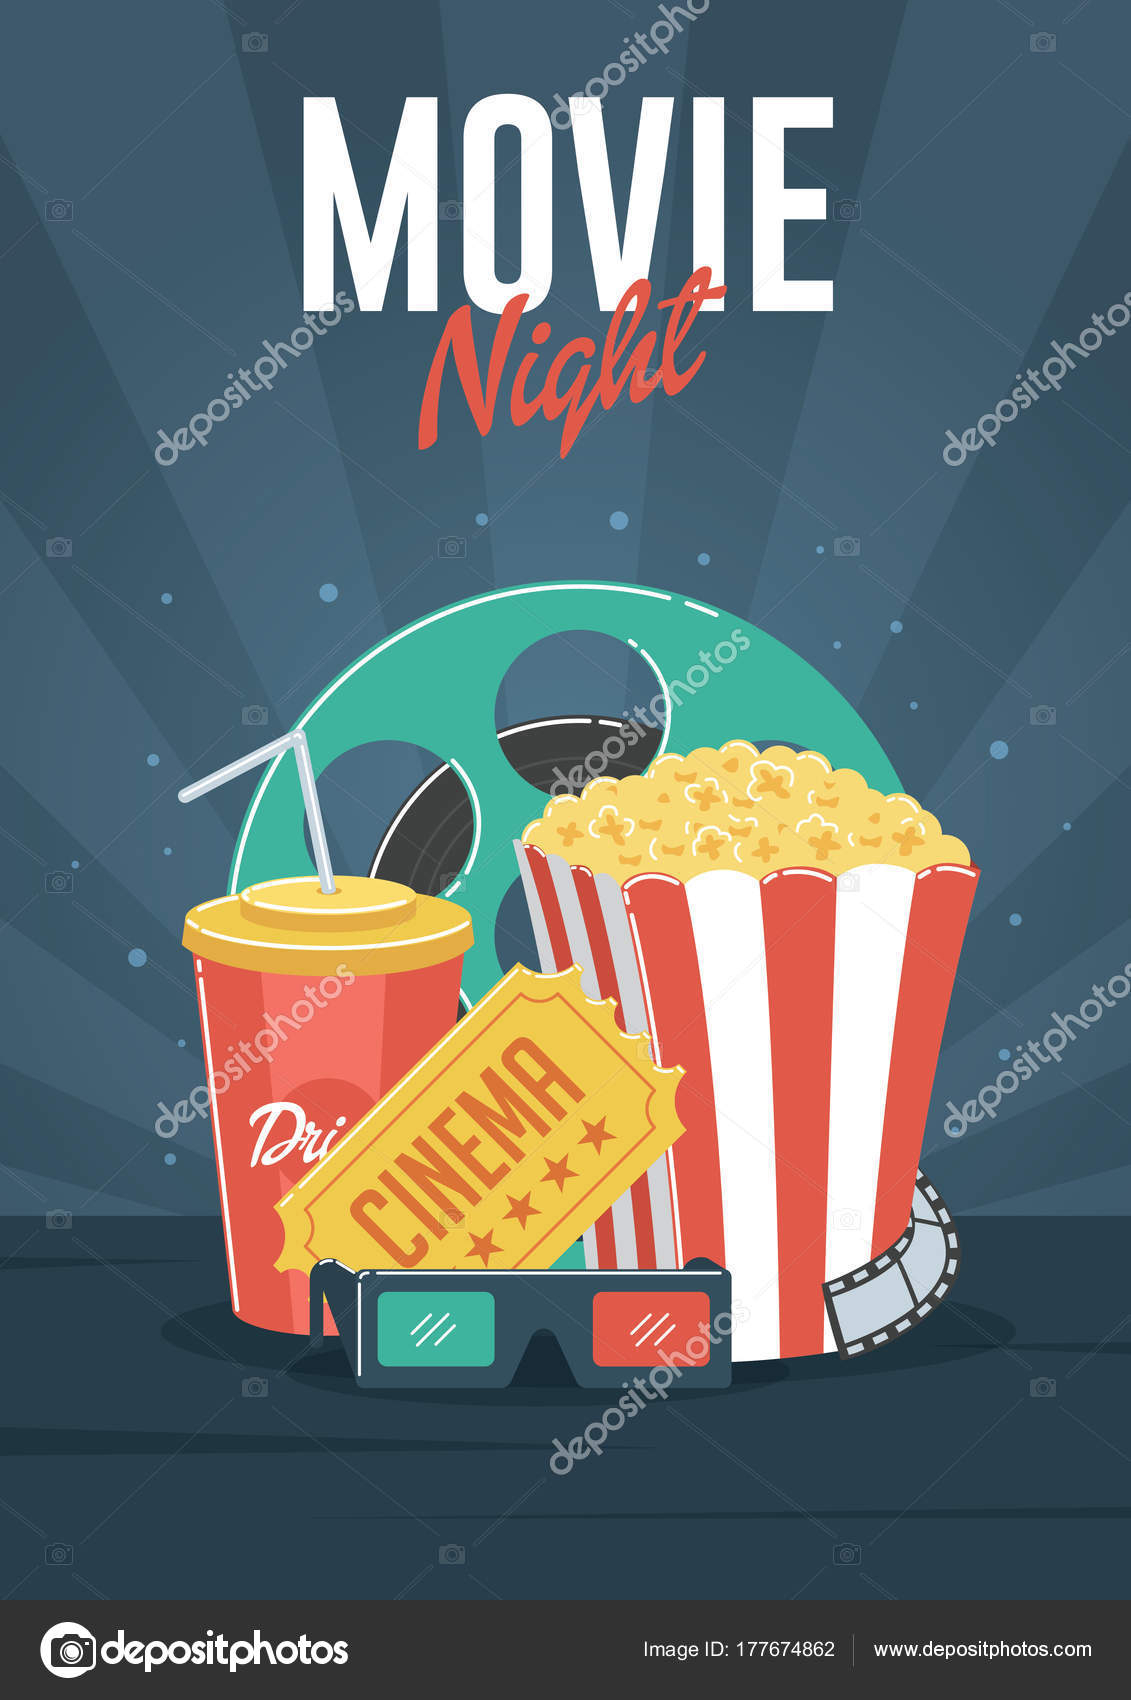 Movie Night Flyer Template Word | Movie Night Can Used Flyer Intended For Movie Flyer Template Word